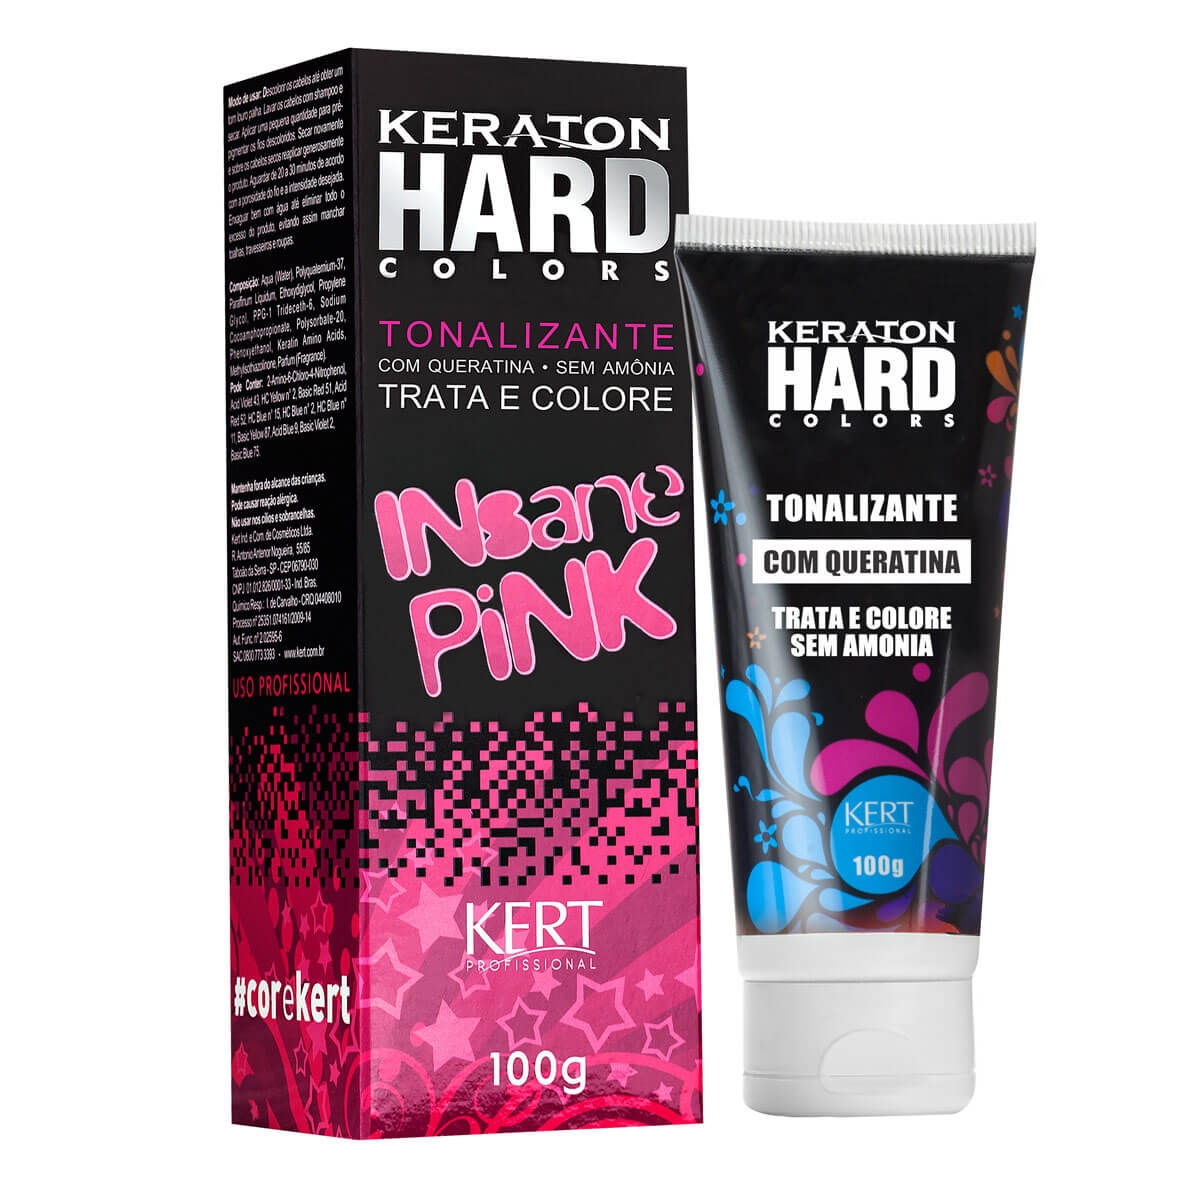 Tonalizante Kert Keraton Hard Colors Insane Pink com 100g 100g